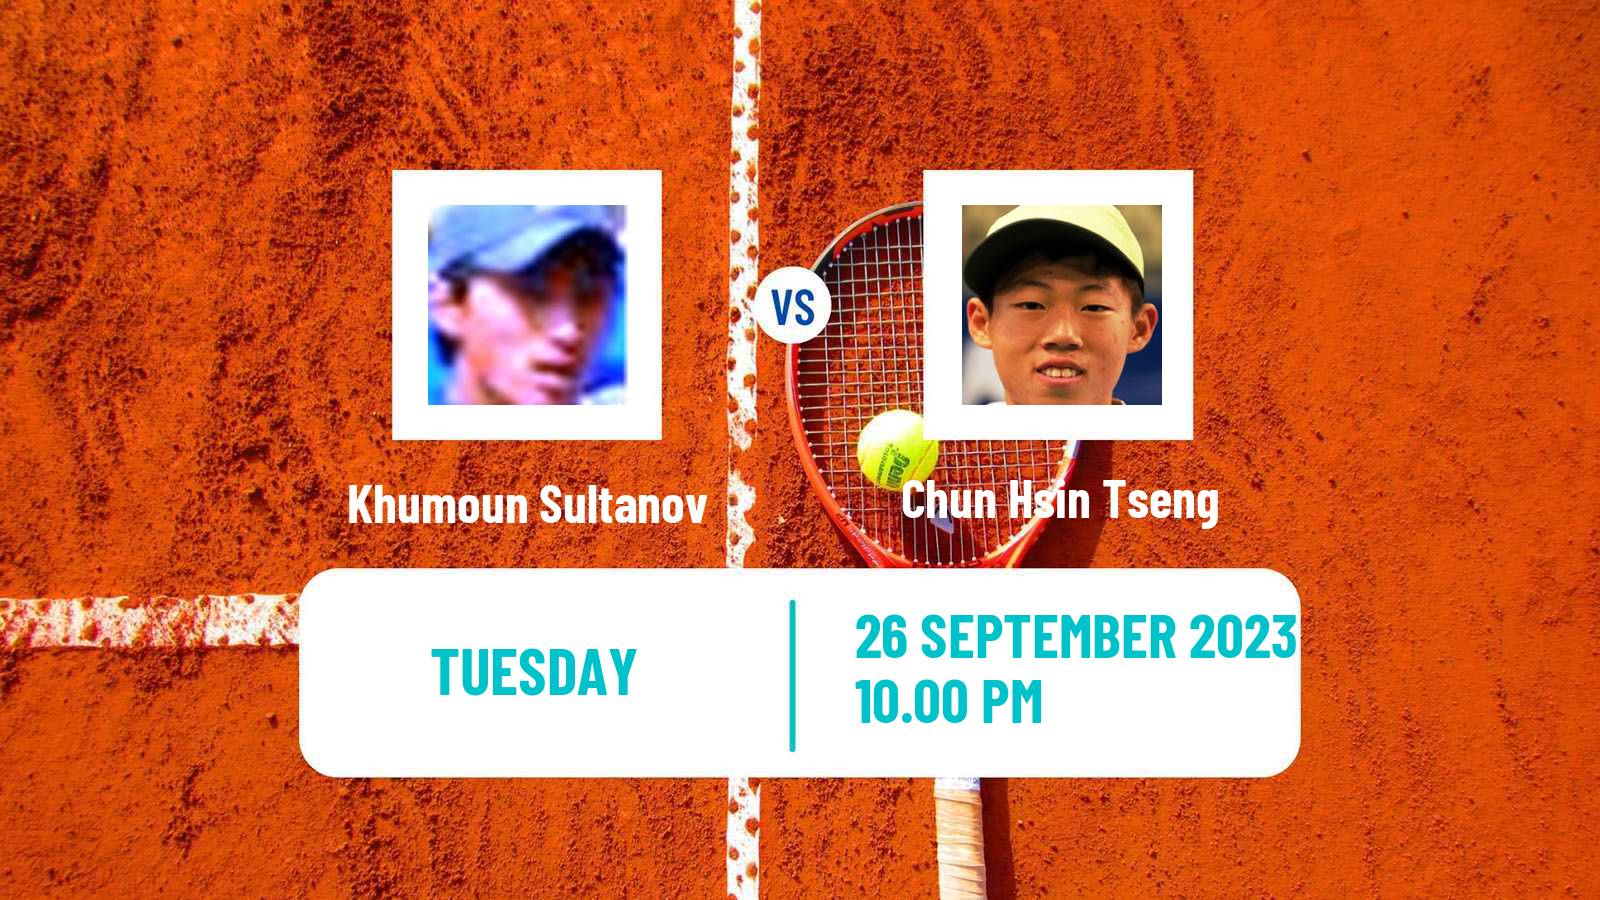 Tennis ATP Asian Games Khumoun Sultanov - Chun Hsin Tseng